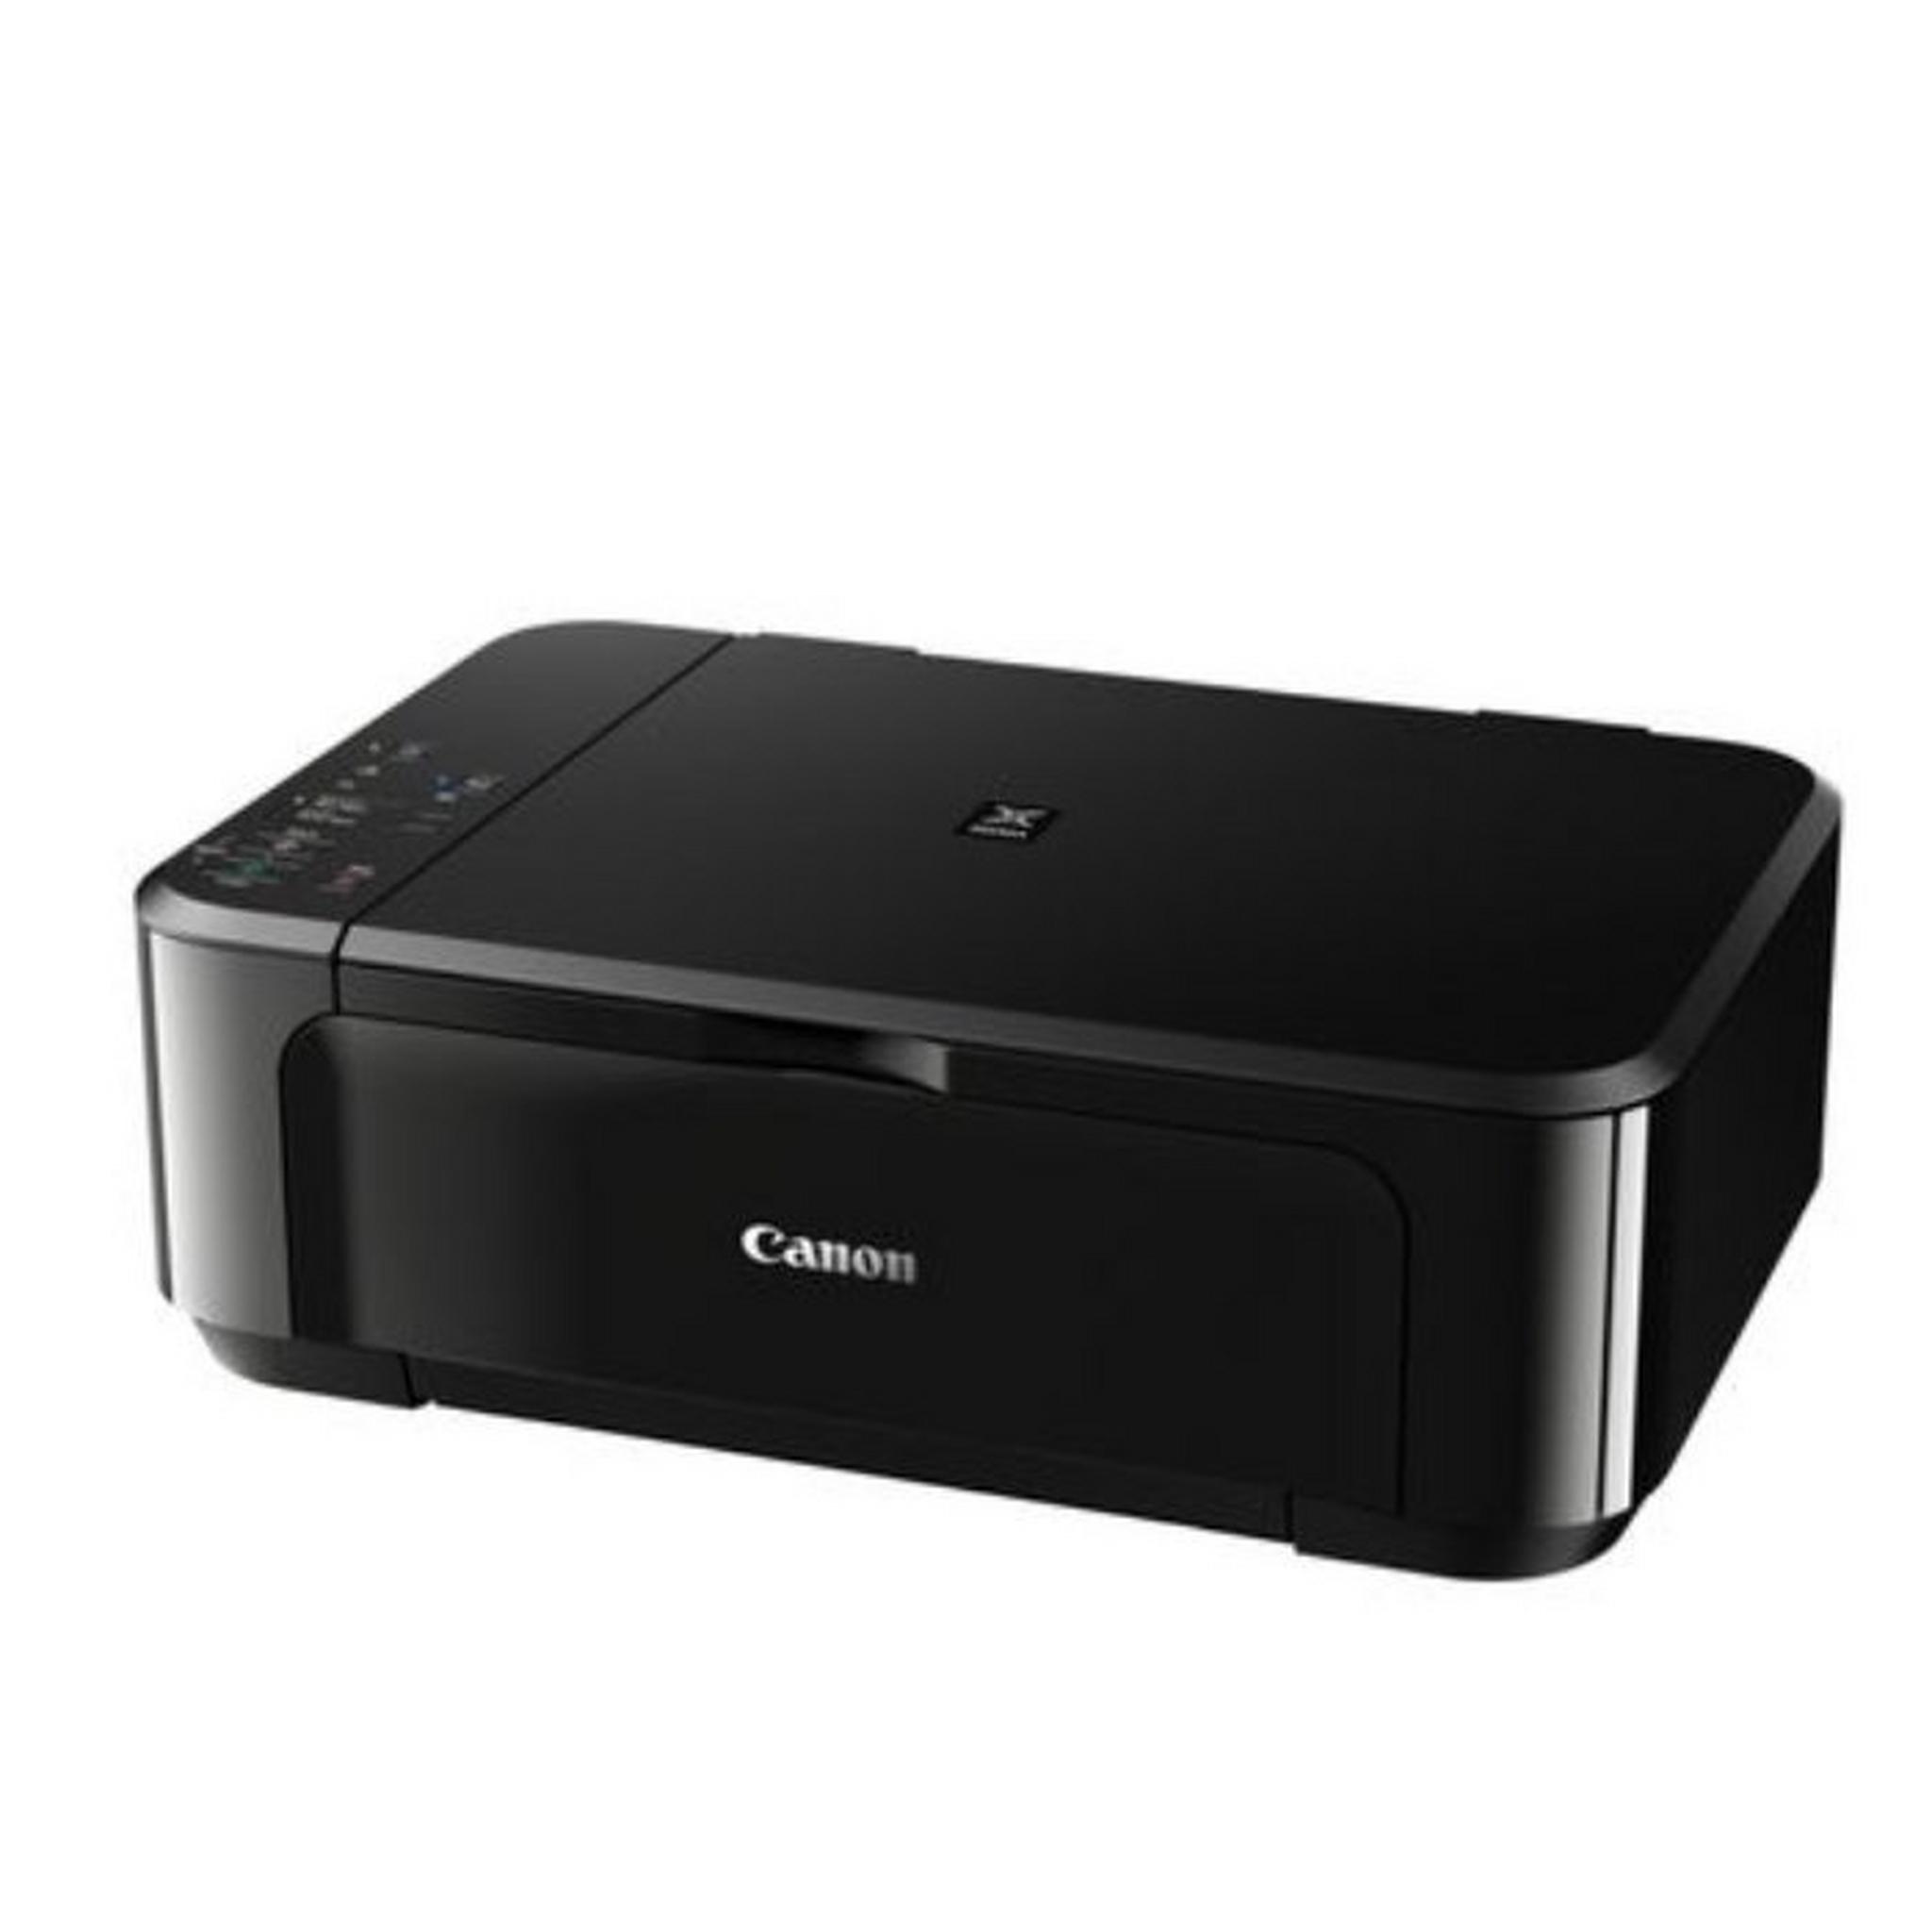 Canon Pixma 3 in1 Inkjet Printer (MG3640S)